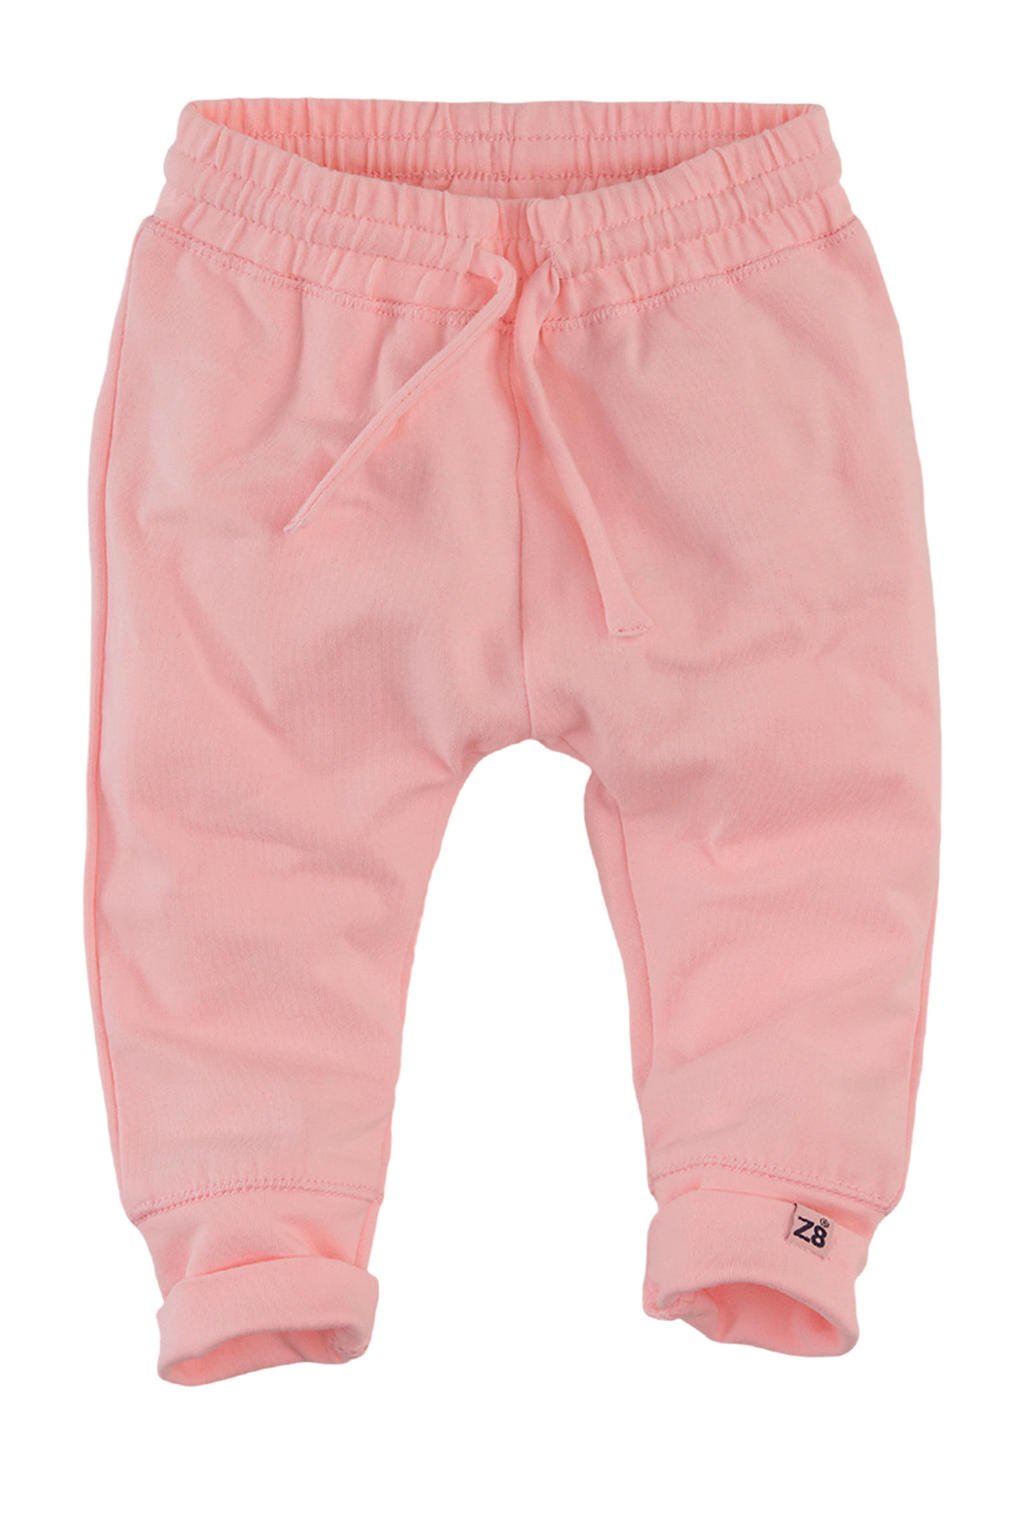 Roze meisjes Z8 baby broek Dodo van stretchkatoen met regular waist en elastische tailleband met koord